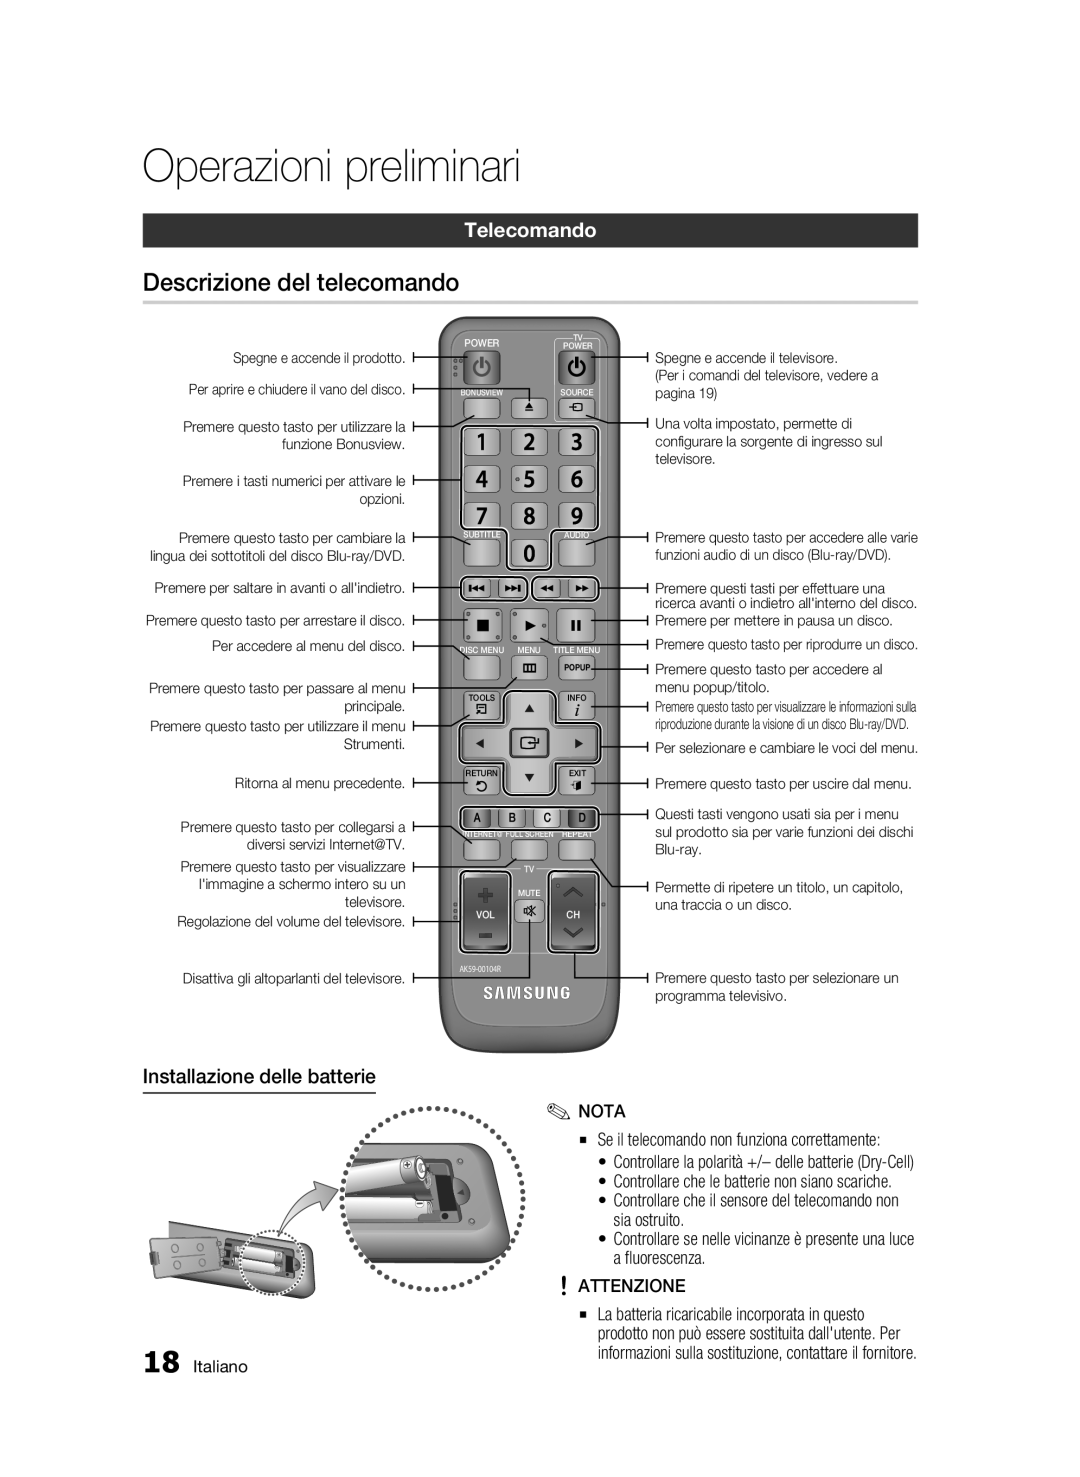 Samsung BD-C6500/XEF manual Descrizione del telecomando, Telecomando, Installazione delle batterie, Operazioni preliminari 